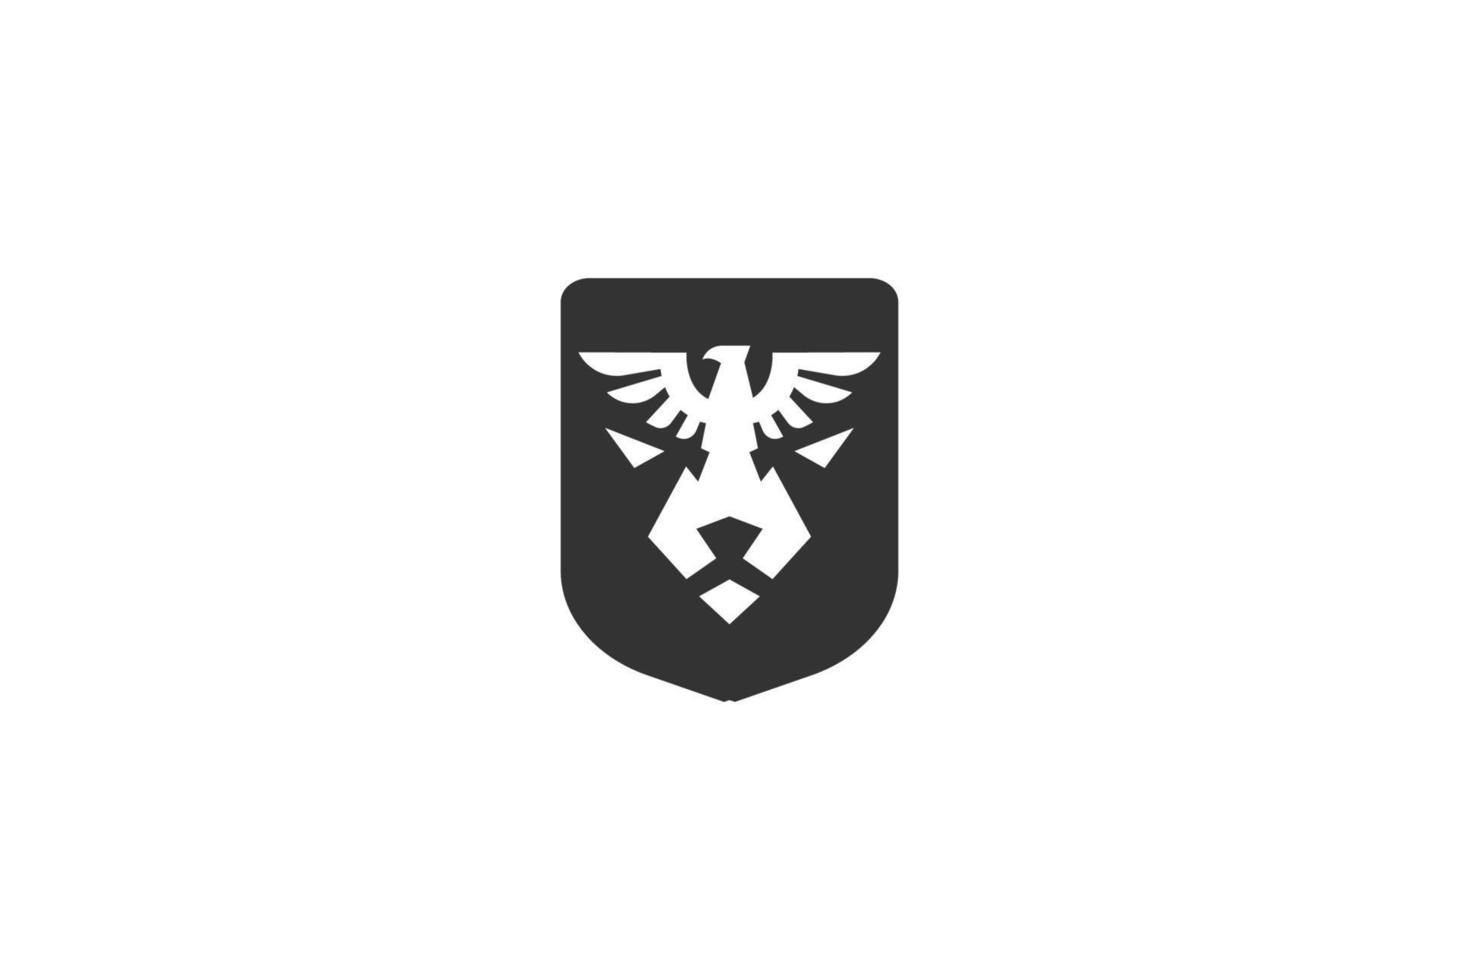 vintage águila halcón halcón ave fénix con león tigre jaguar leopardo puma escudo facial insignia emblema diseño de logotipo vector